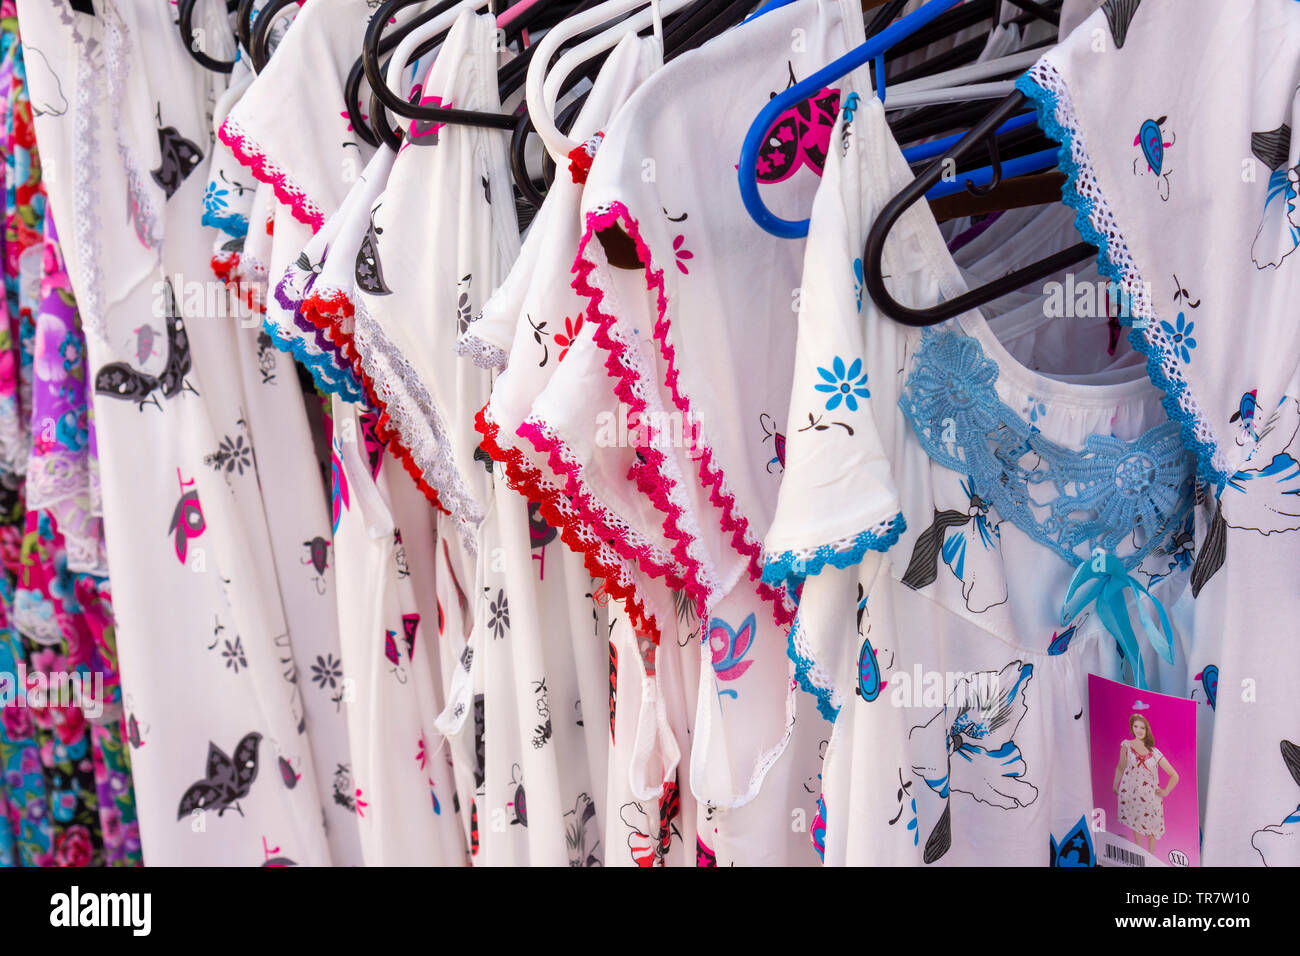 Billige Chinesische hergestellt Bekleidung an einer Messe in der Nähe von Astoria New York am Montag, den 27. Mai 2019. (© Richard B. Levine) Stockfoto